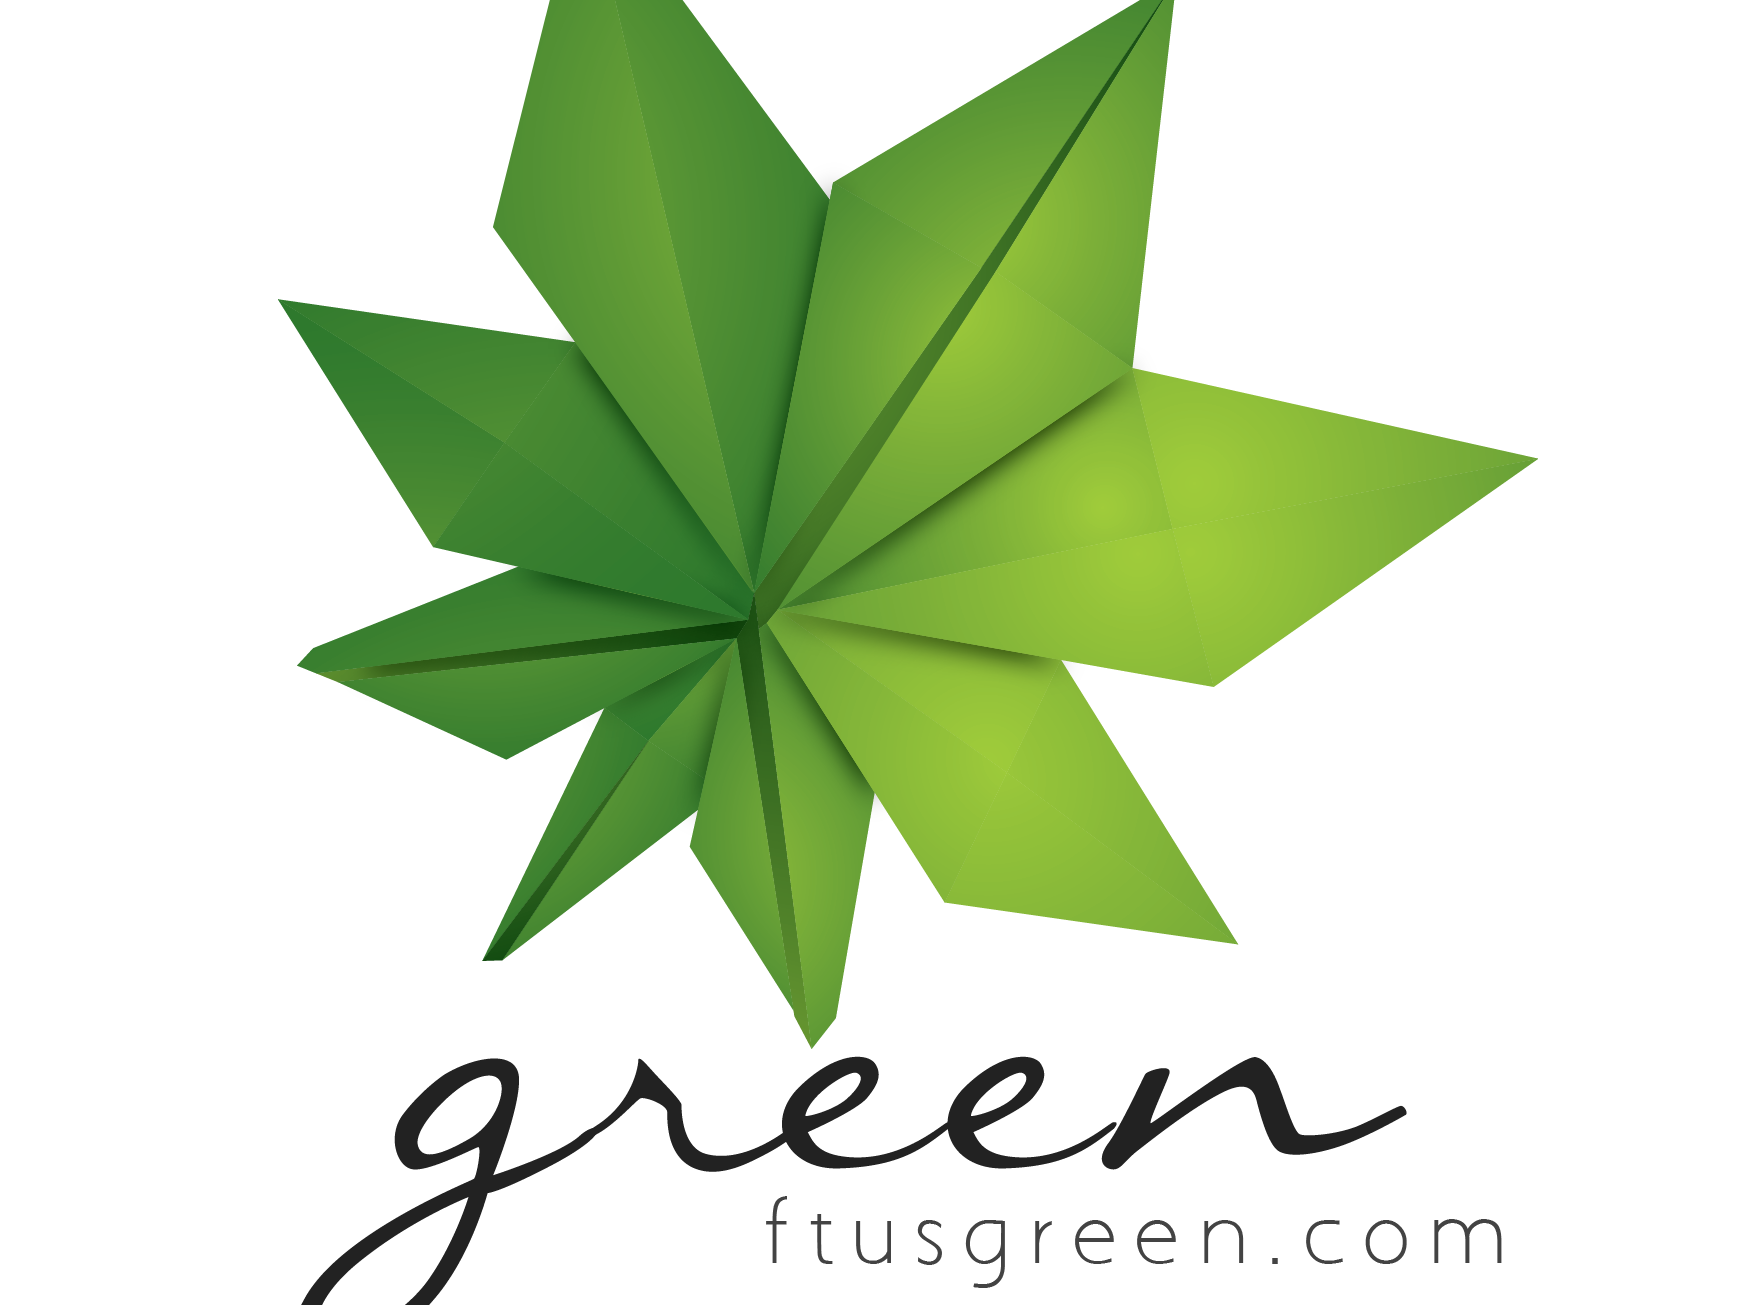 FTU’s Green 2014 – Màu xanh trở lại